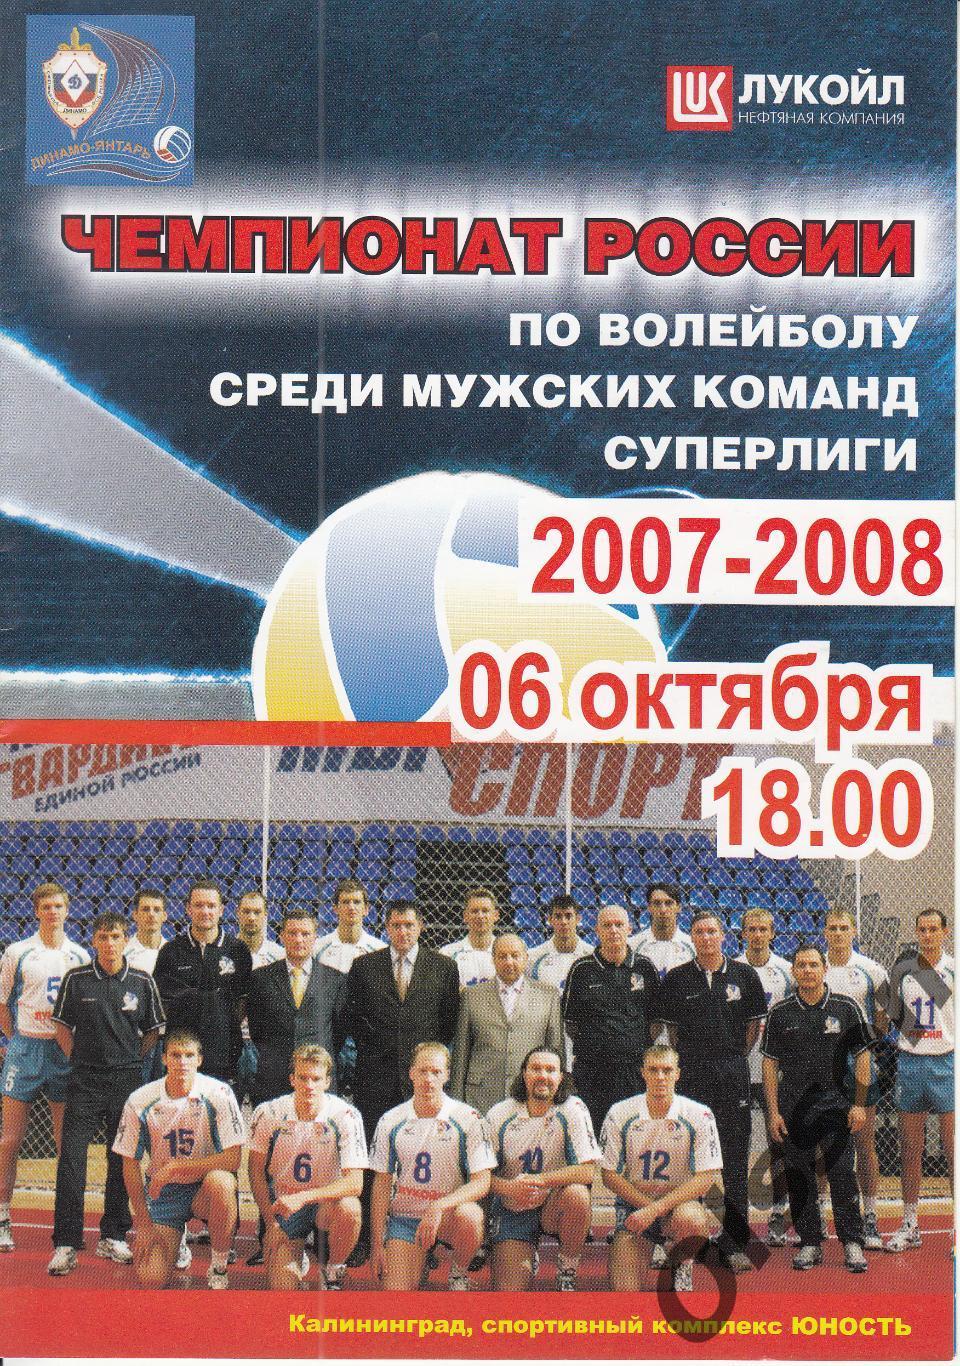 Динамо-Янтарь Калининград - ЗСК-Газпром Сургут 06.10.2007